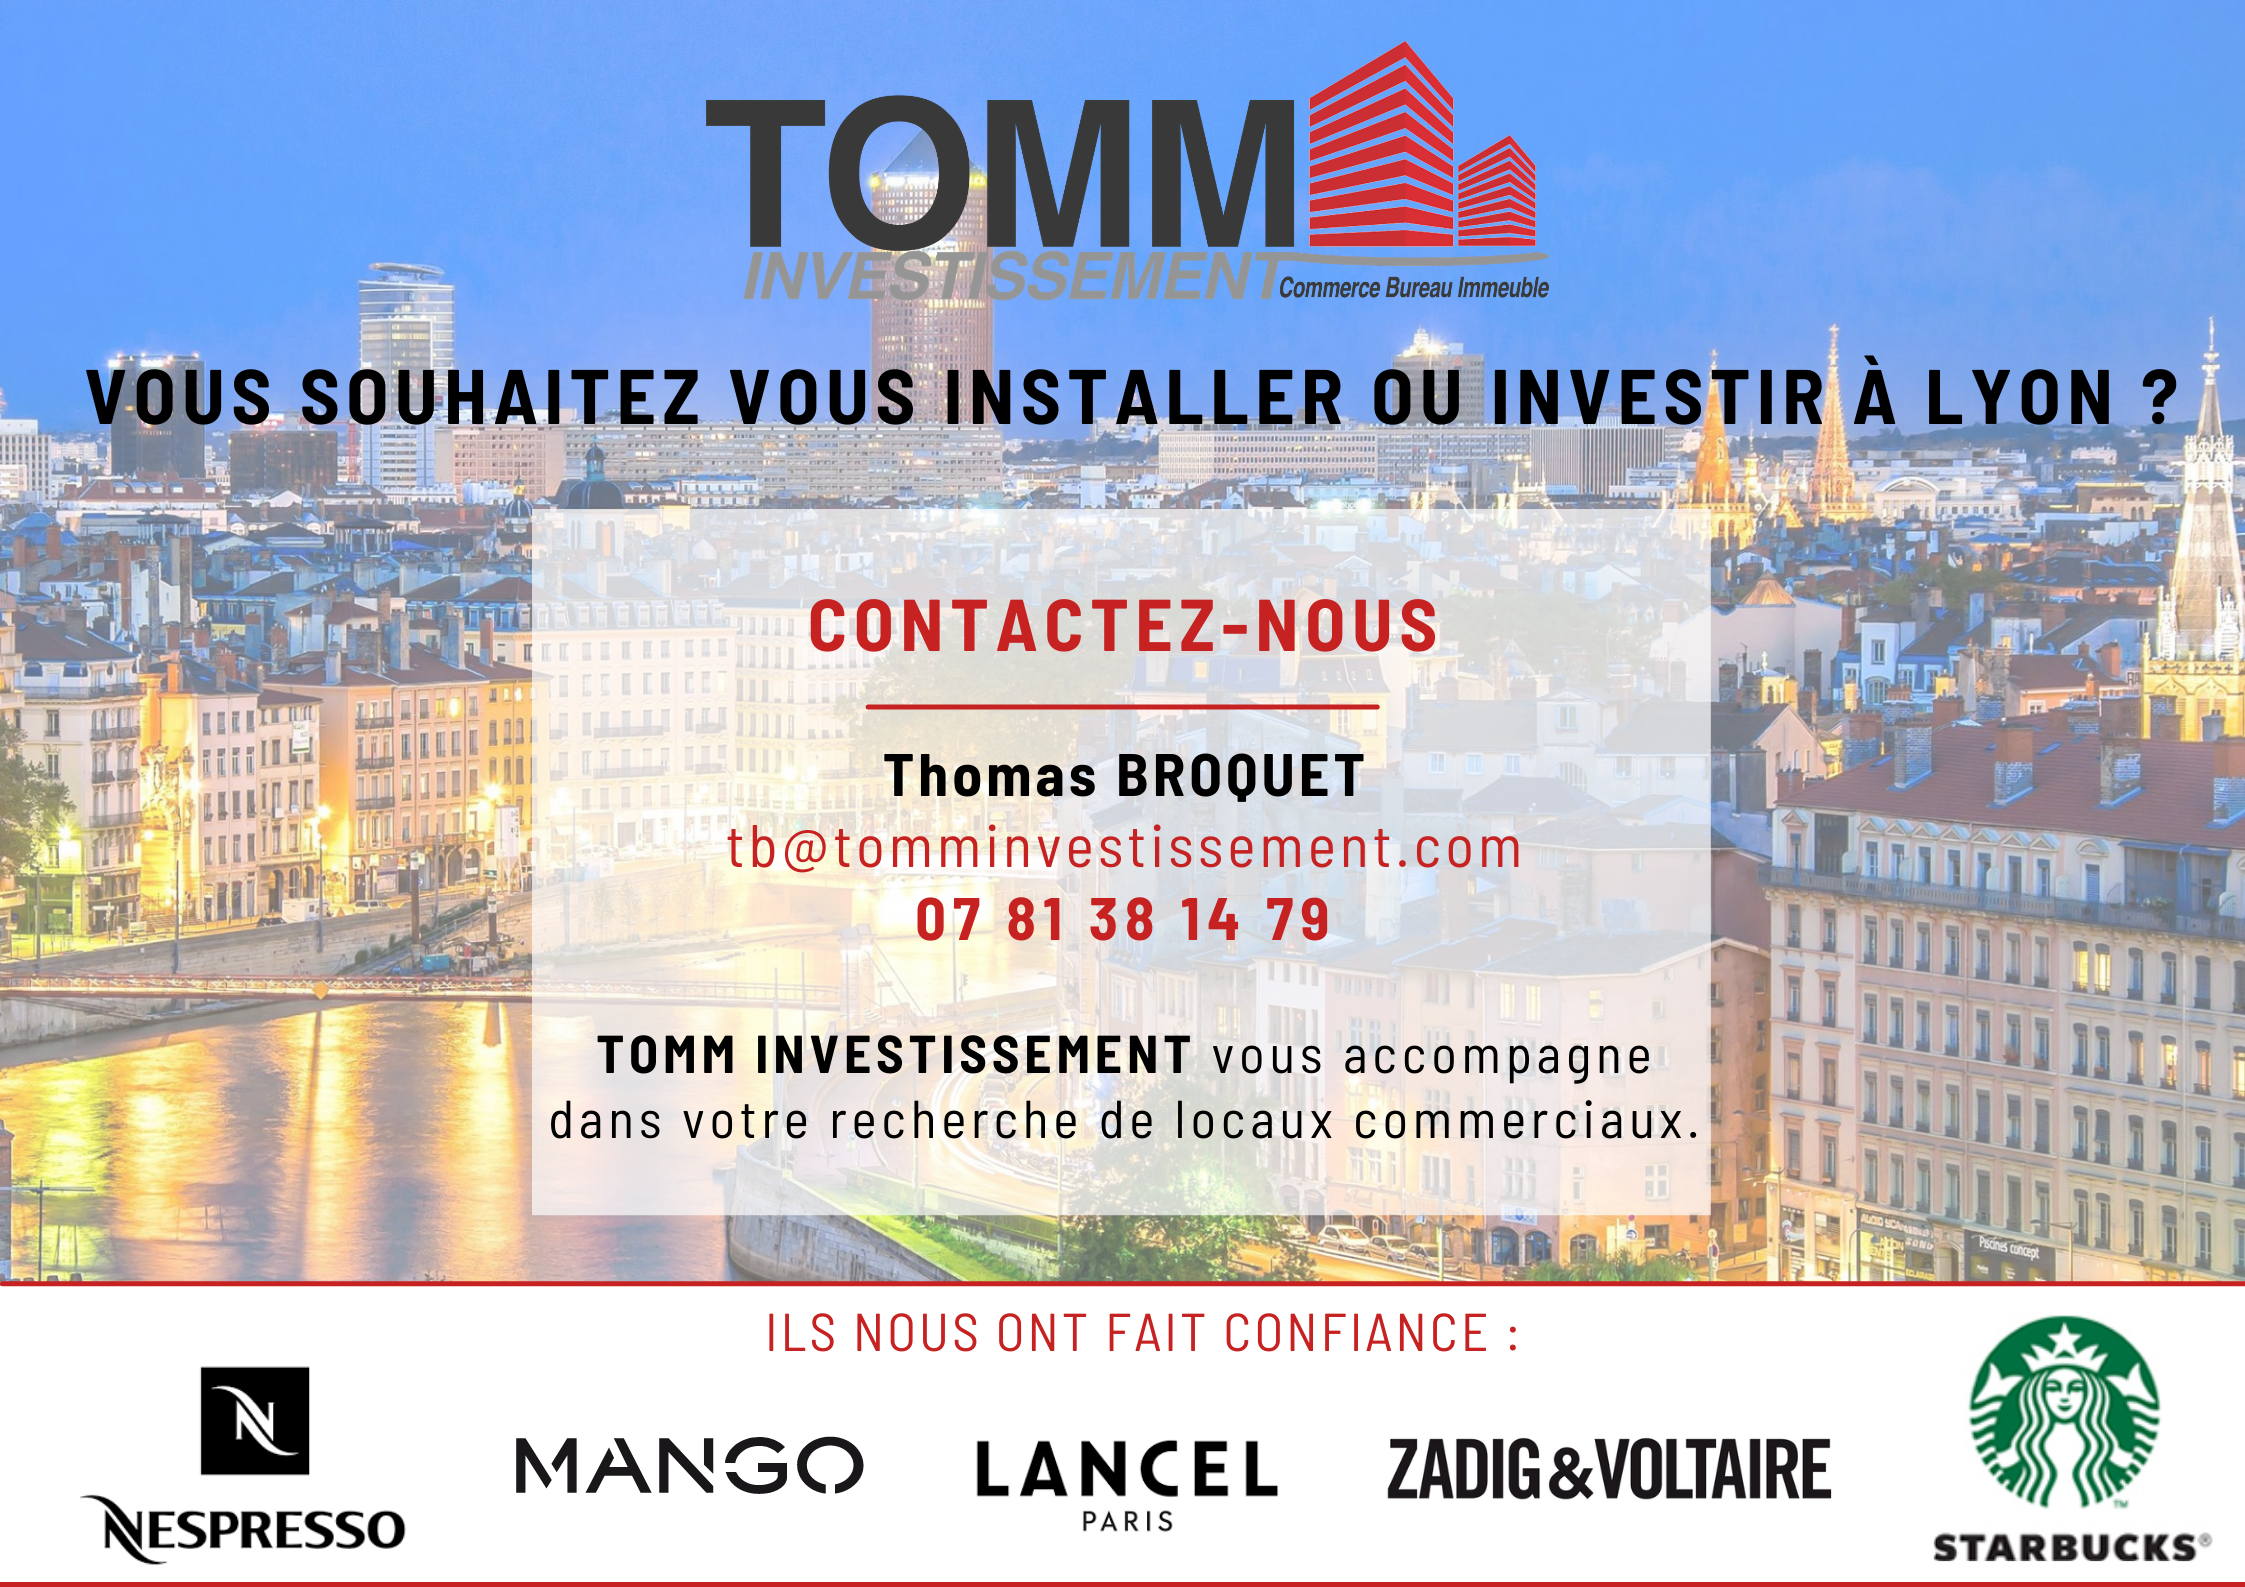 TOMM INVESTISSEMENT – Votre recherche de locaux commerciaux à Lyon